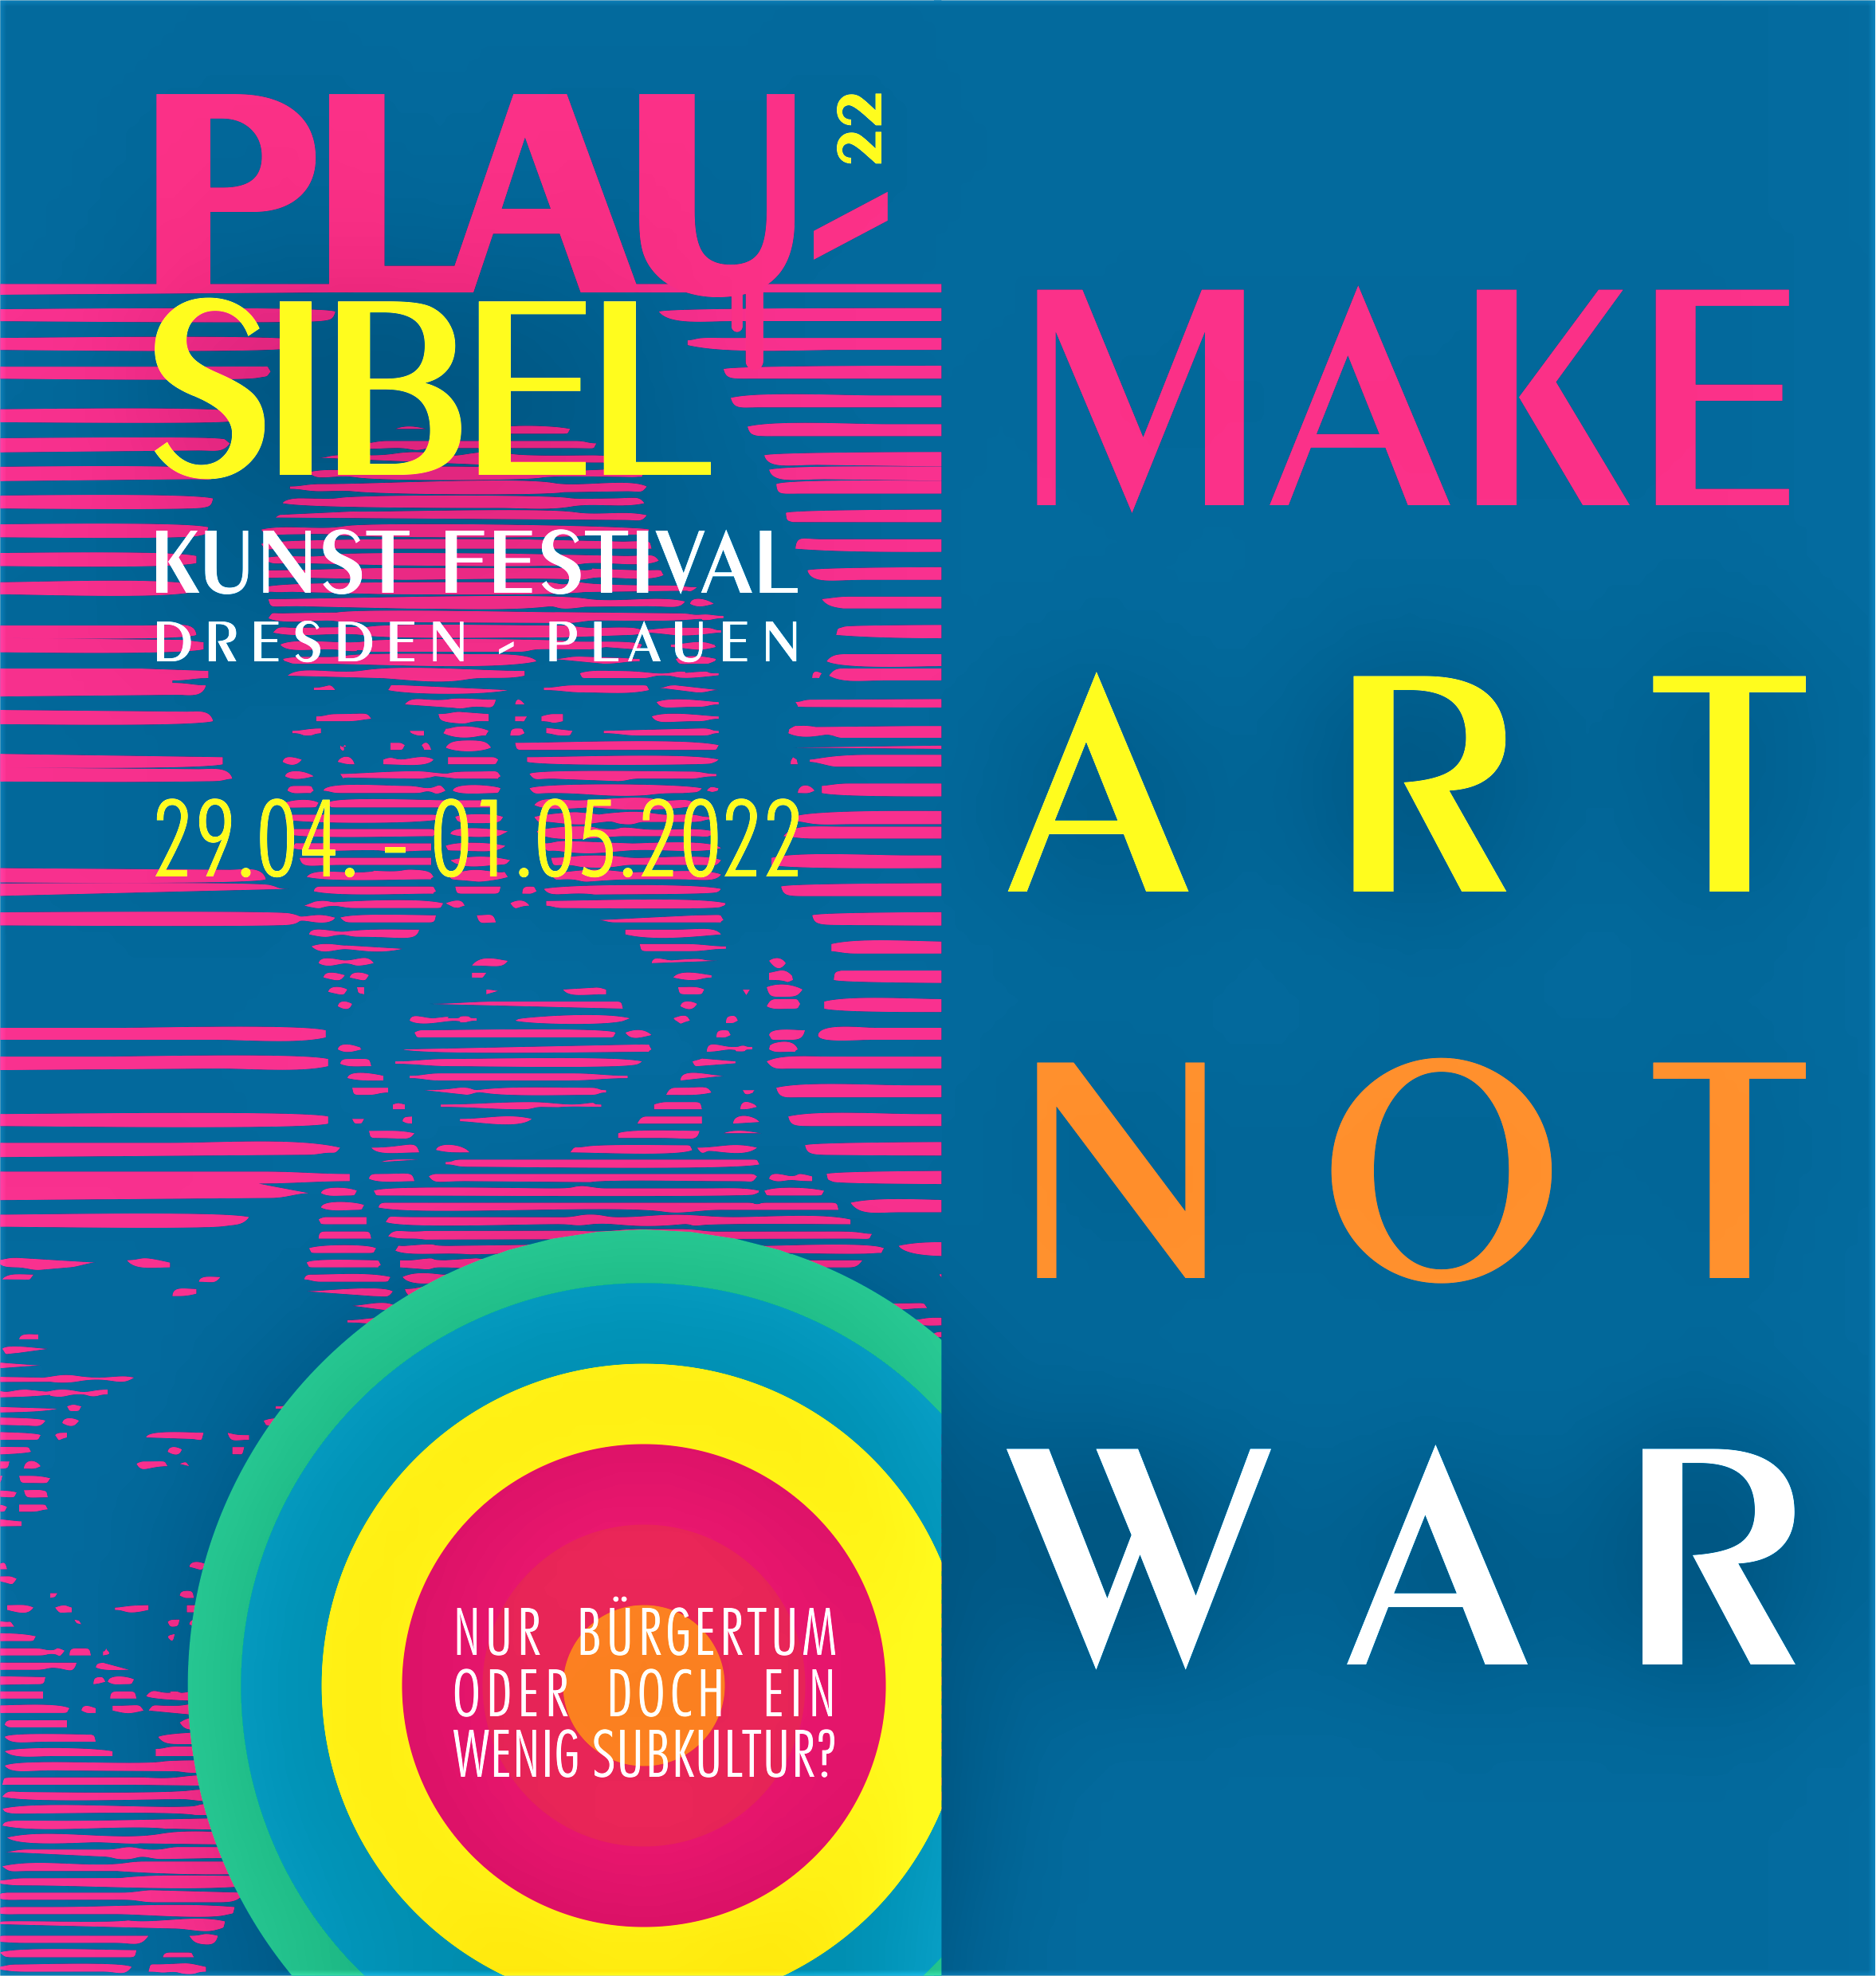 Plau-Sibel Kunstfestival